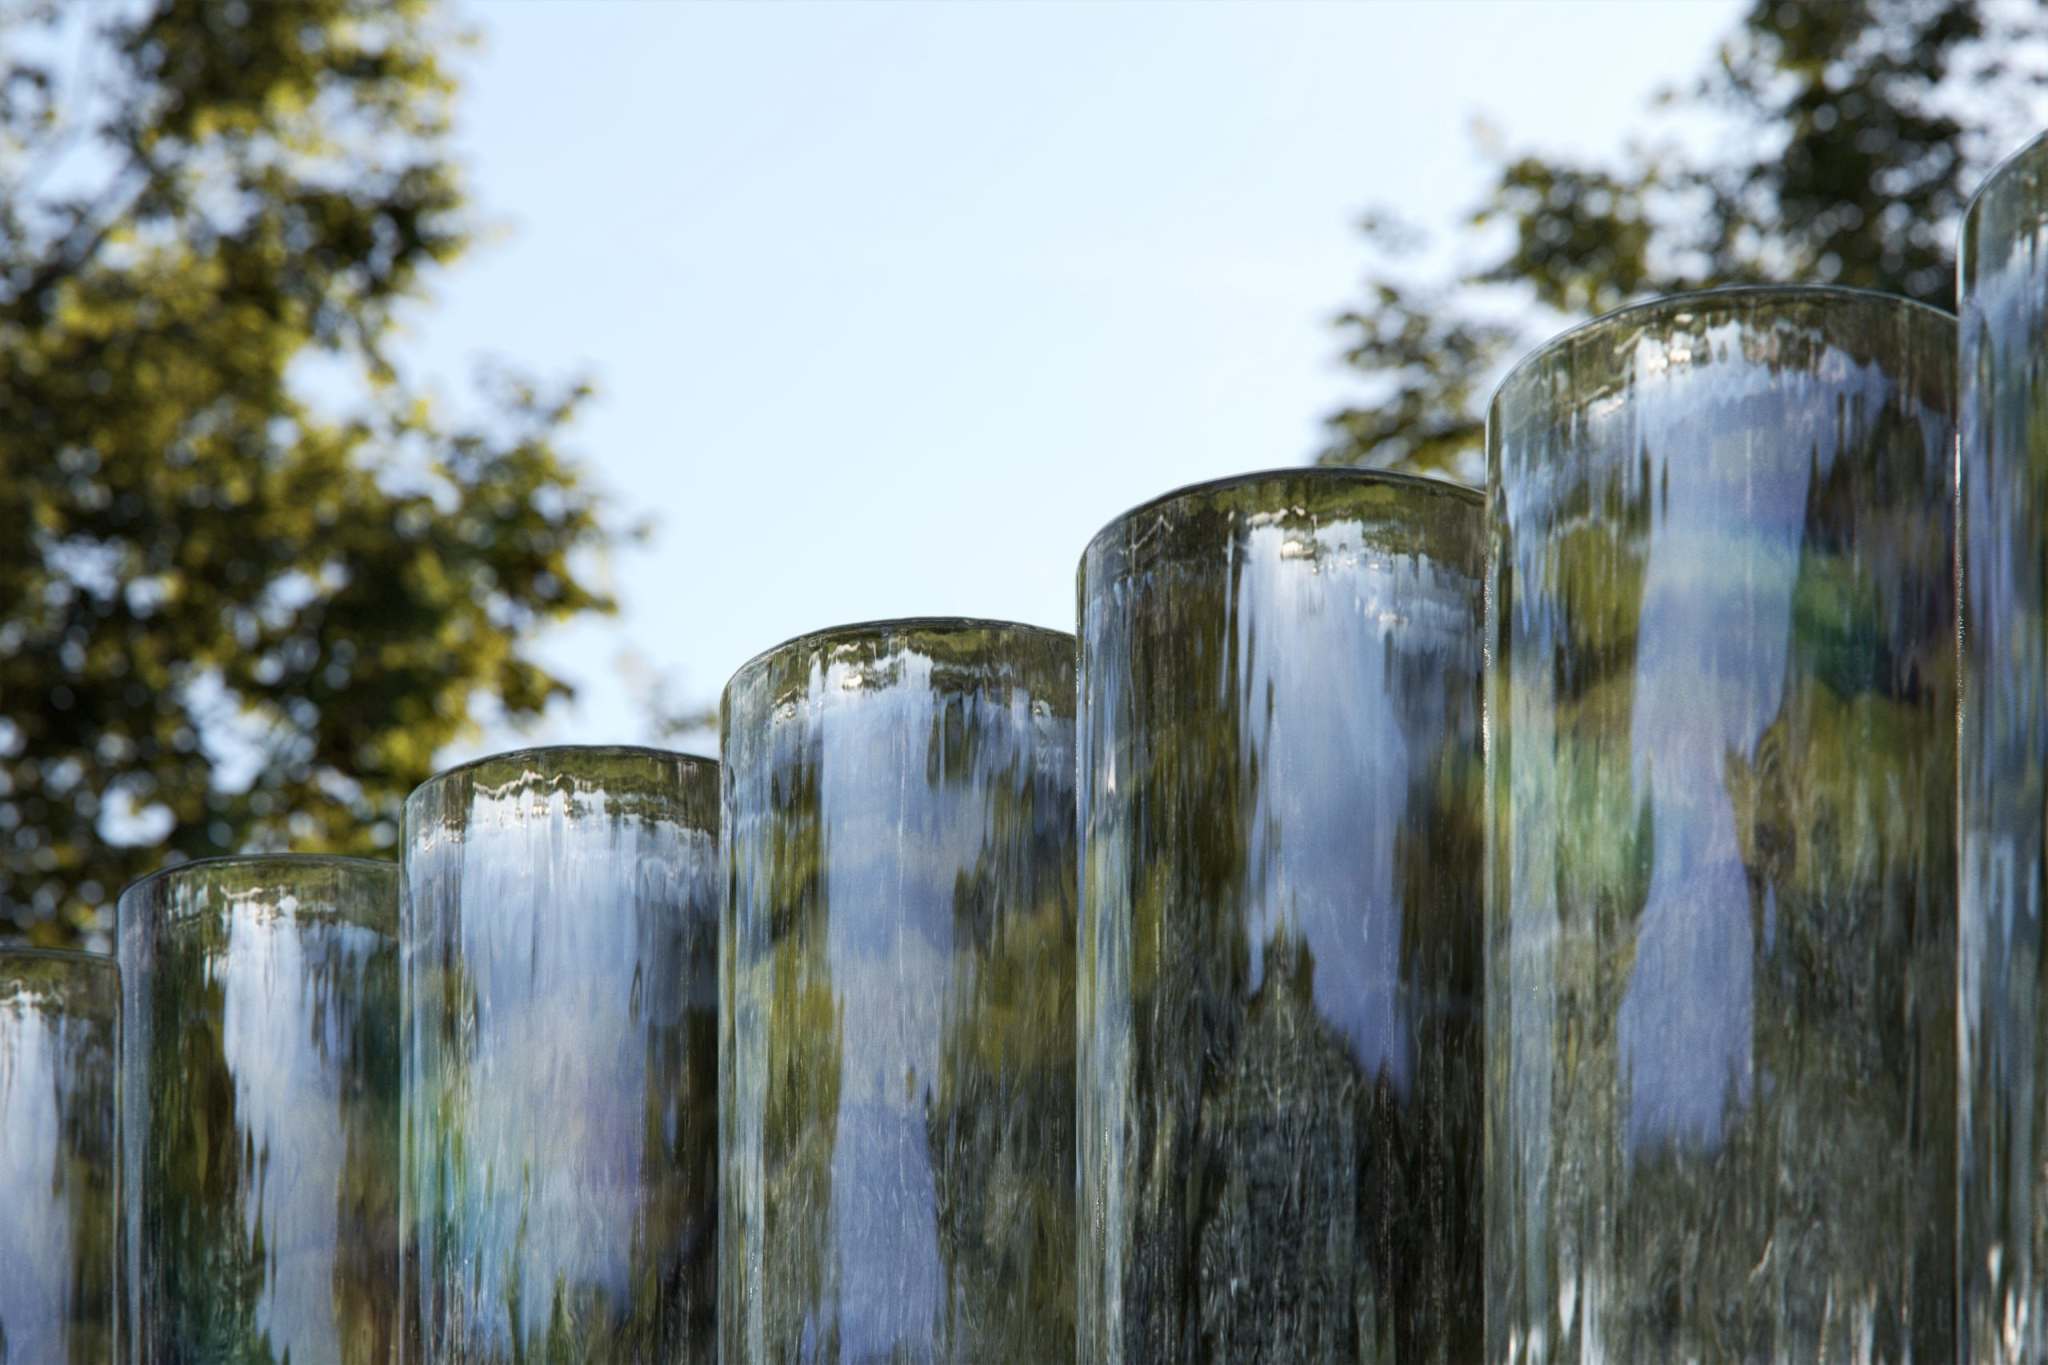 蘋果總部將展出 400 根波浪玻璃圓柱的《海市蜃樓》幻境 | Apple Park | iPhone News 愛瘋了